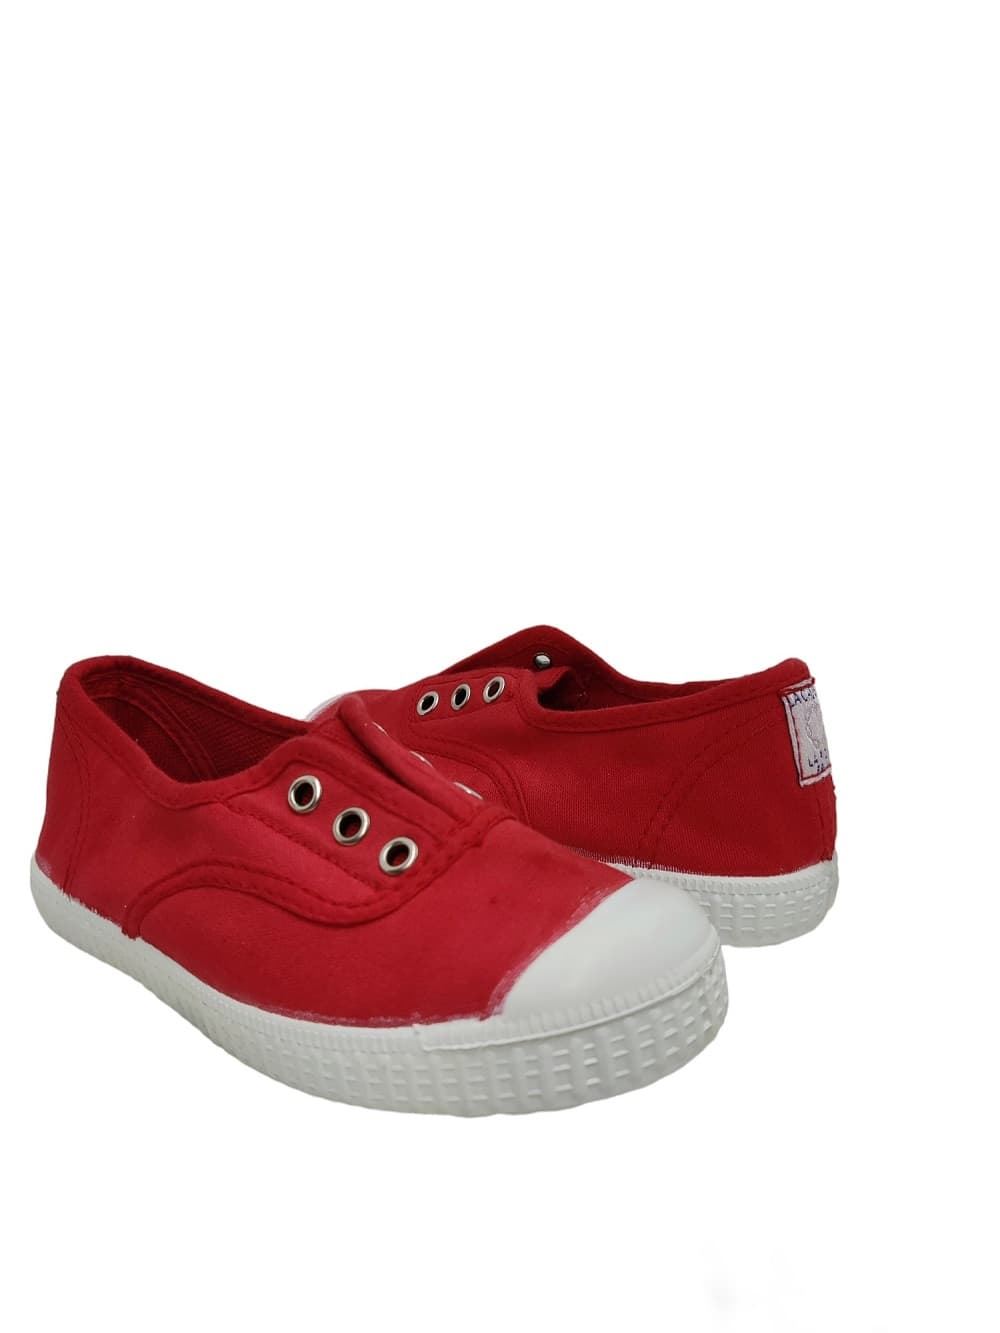 La Cadena Zapatillas niños Lona Rojo con Puntera - Imagen 1